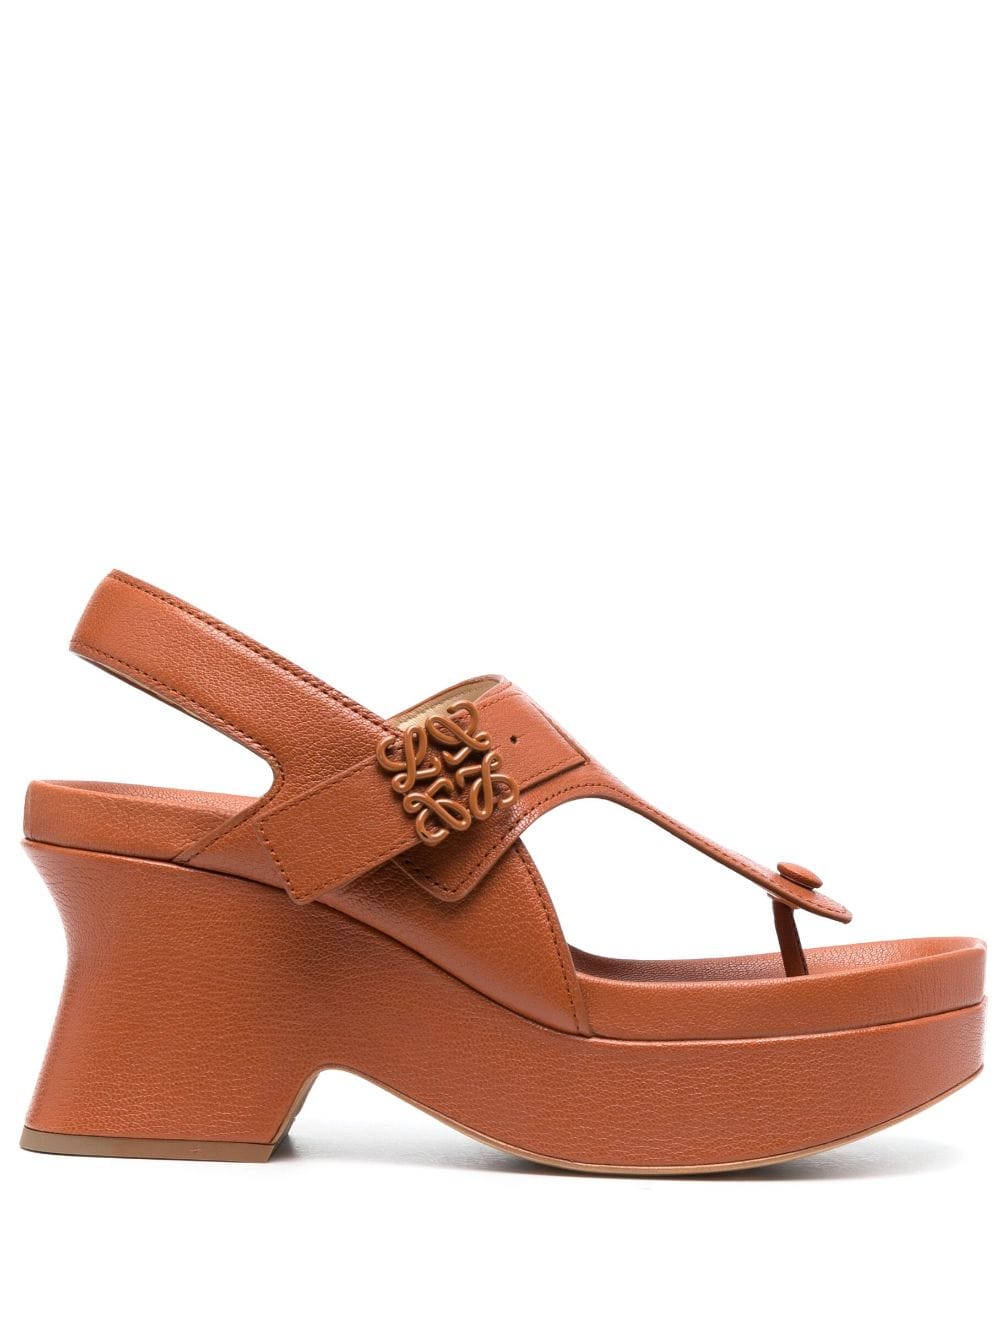 LOEWE Ease 90mm leather flatform sandals - Brown